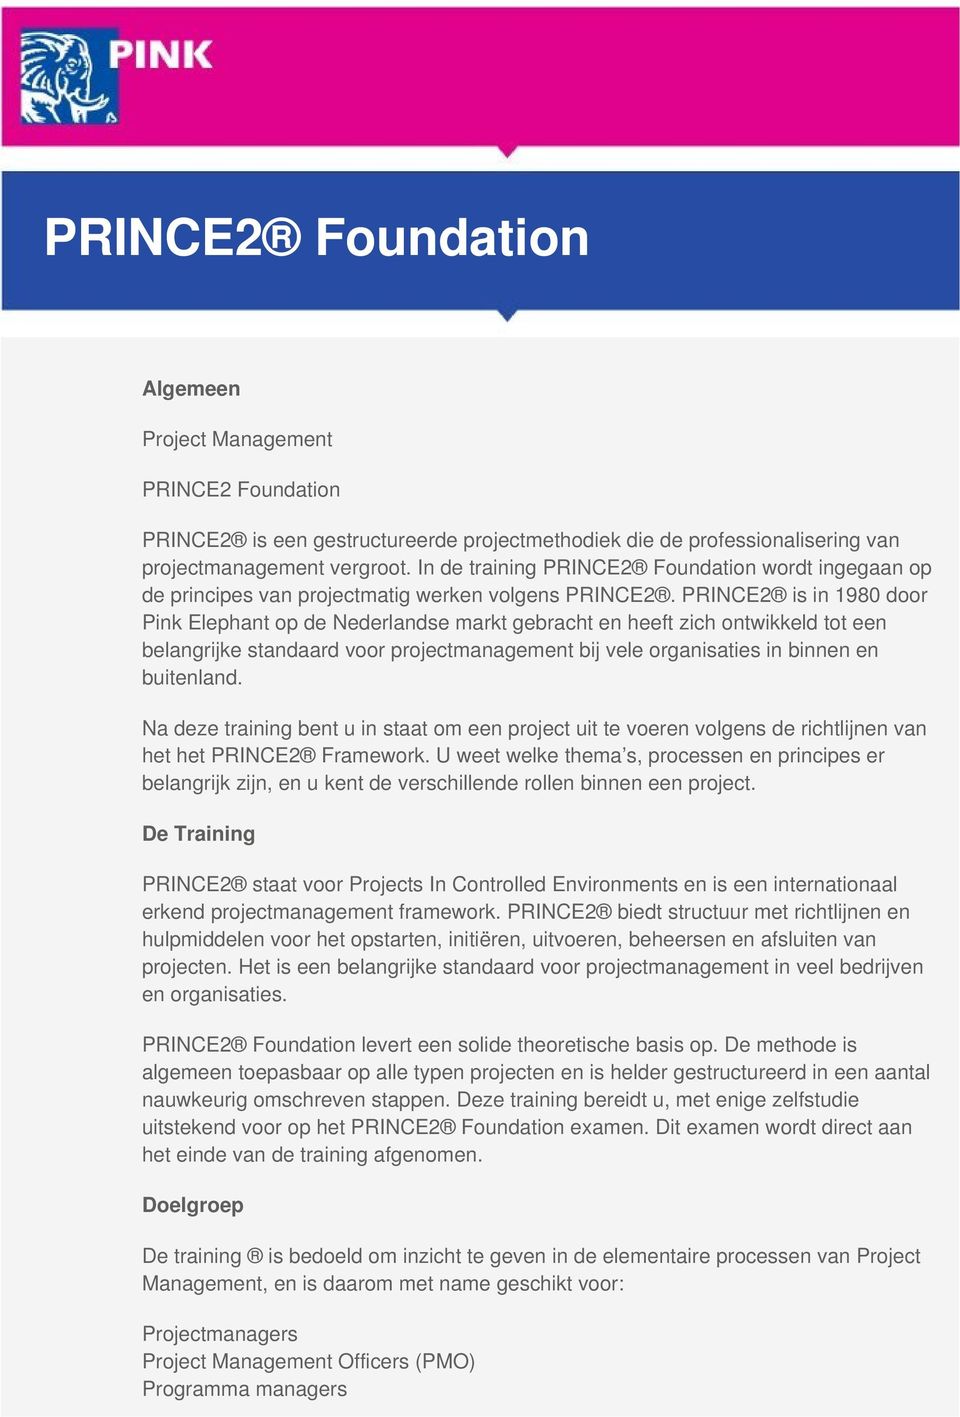 PRINCE2 is in 1980 door Pink Elephant op de Nederlandse markt gebracht en heeft zich ontwikkeld tot een belangrijke standaard voor projectmanagement bij vele organisaties in binnen en buitenland.